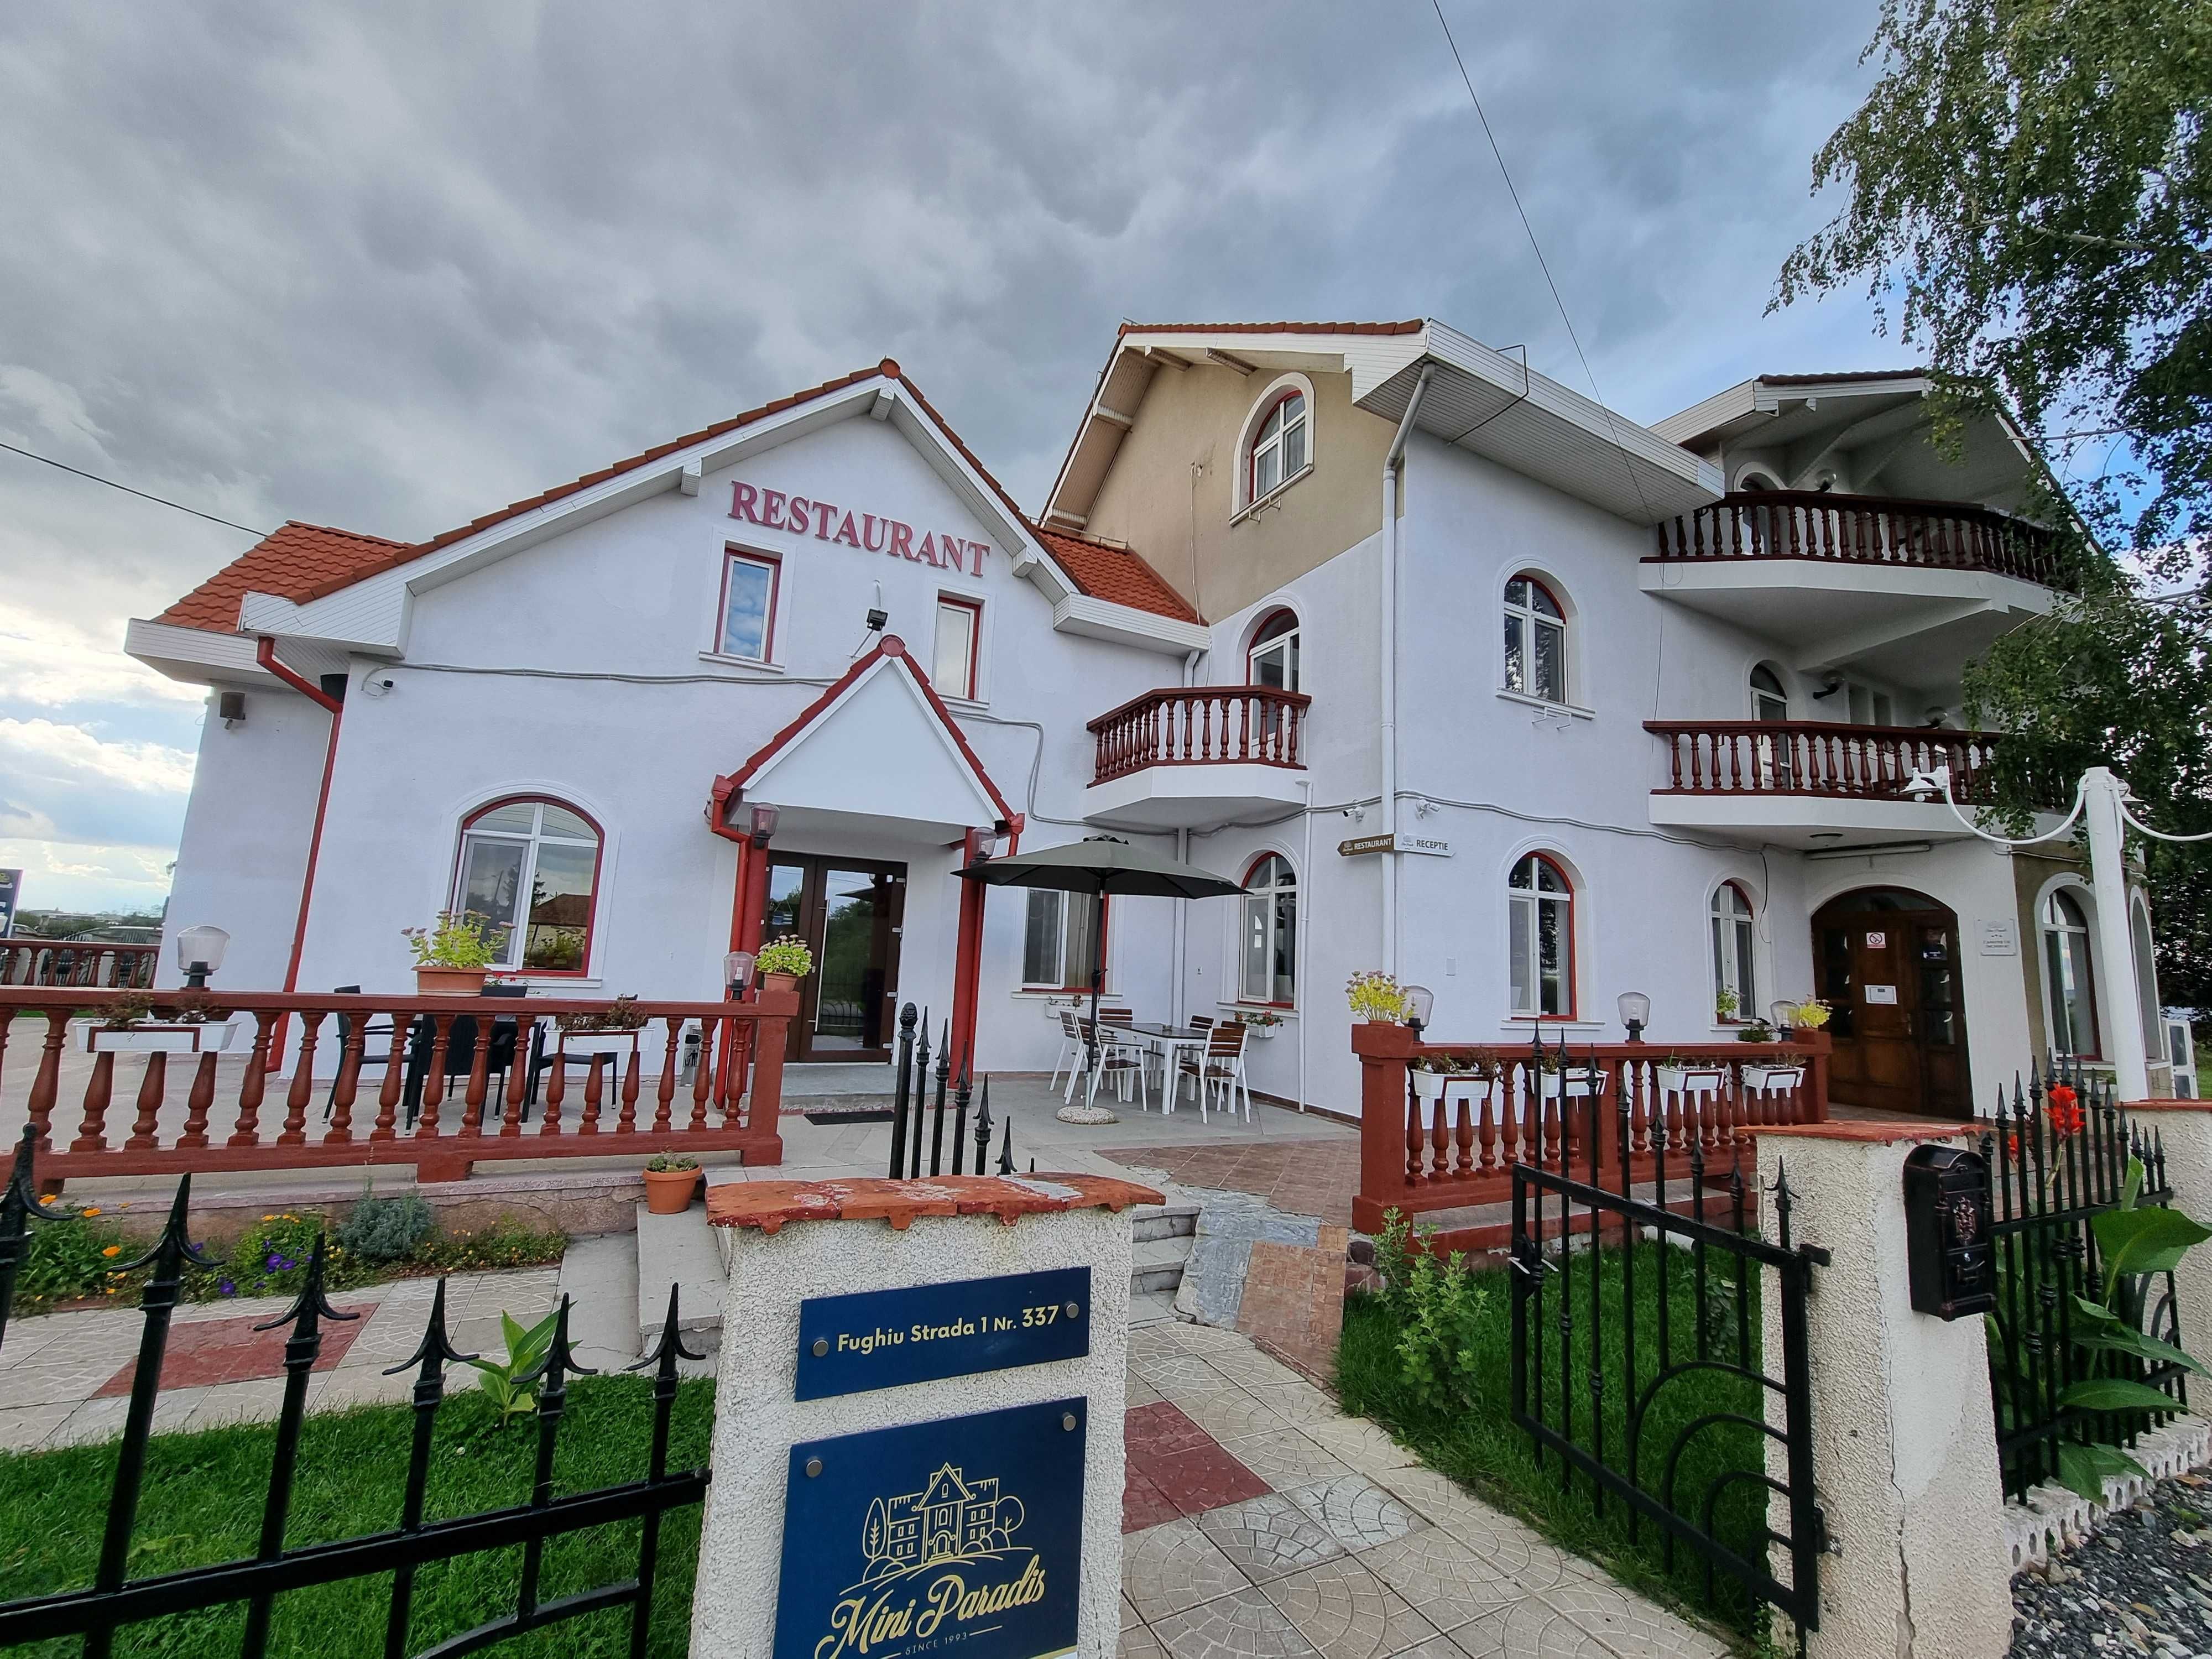 Afacere de vanzare Horeca Restaurant Hotel Osorhei Bihor